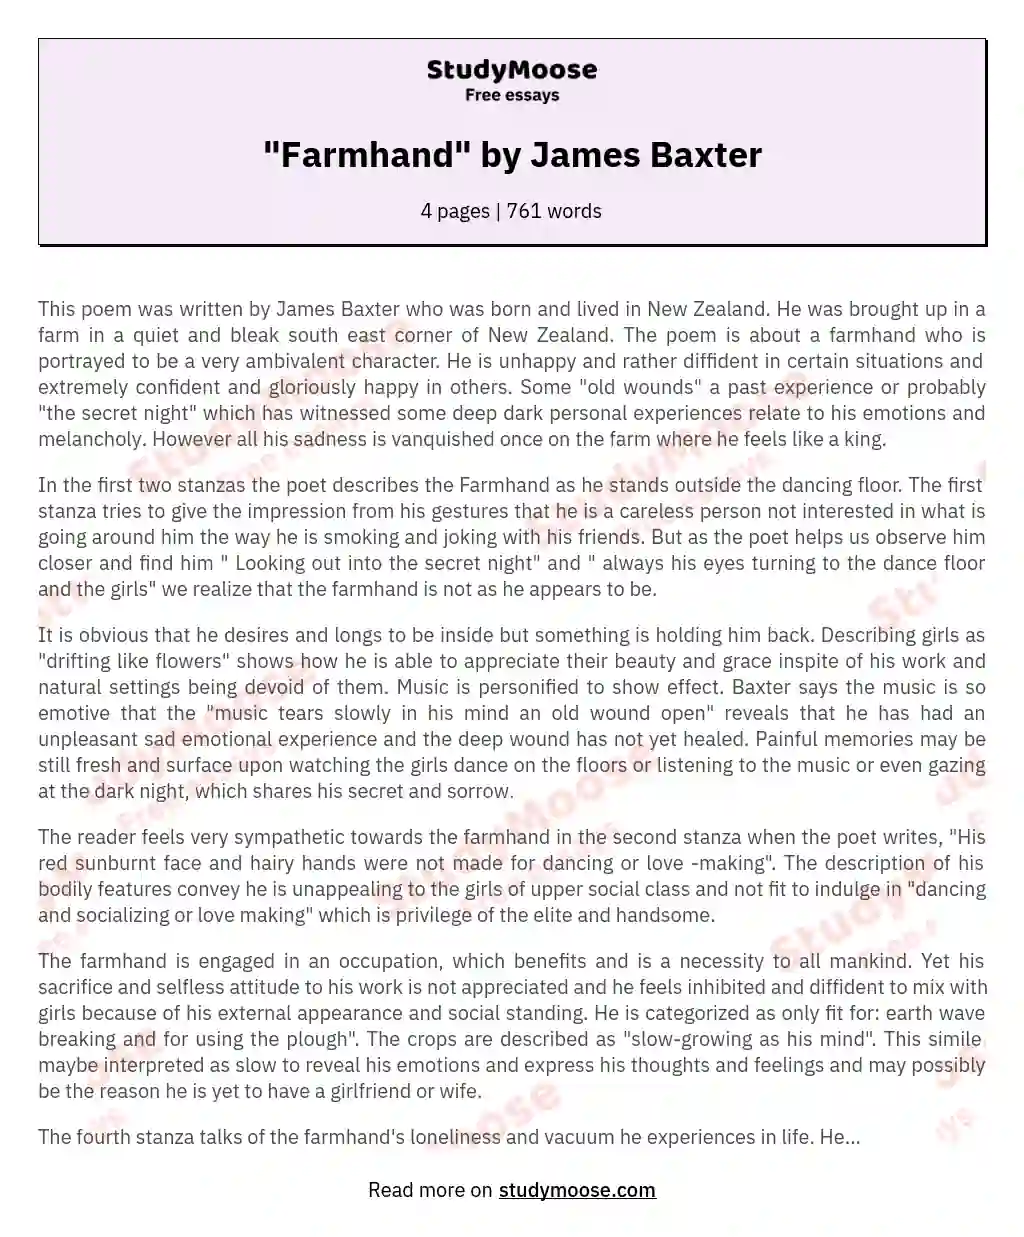 "Farmhand" by James Baxter essay